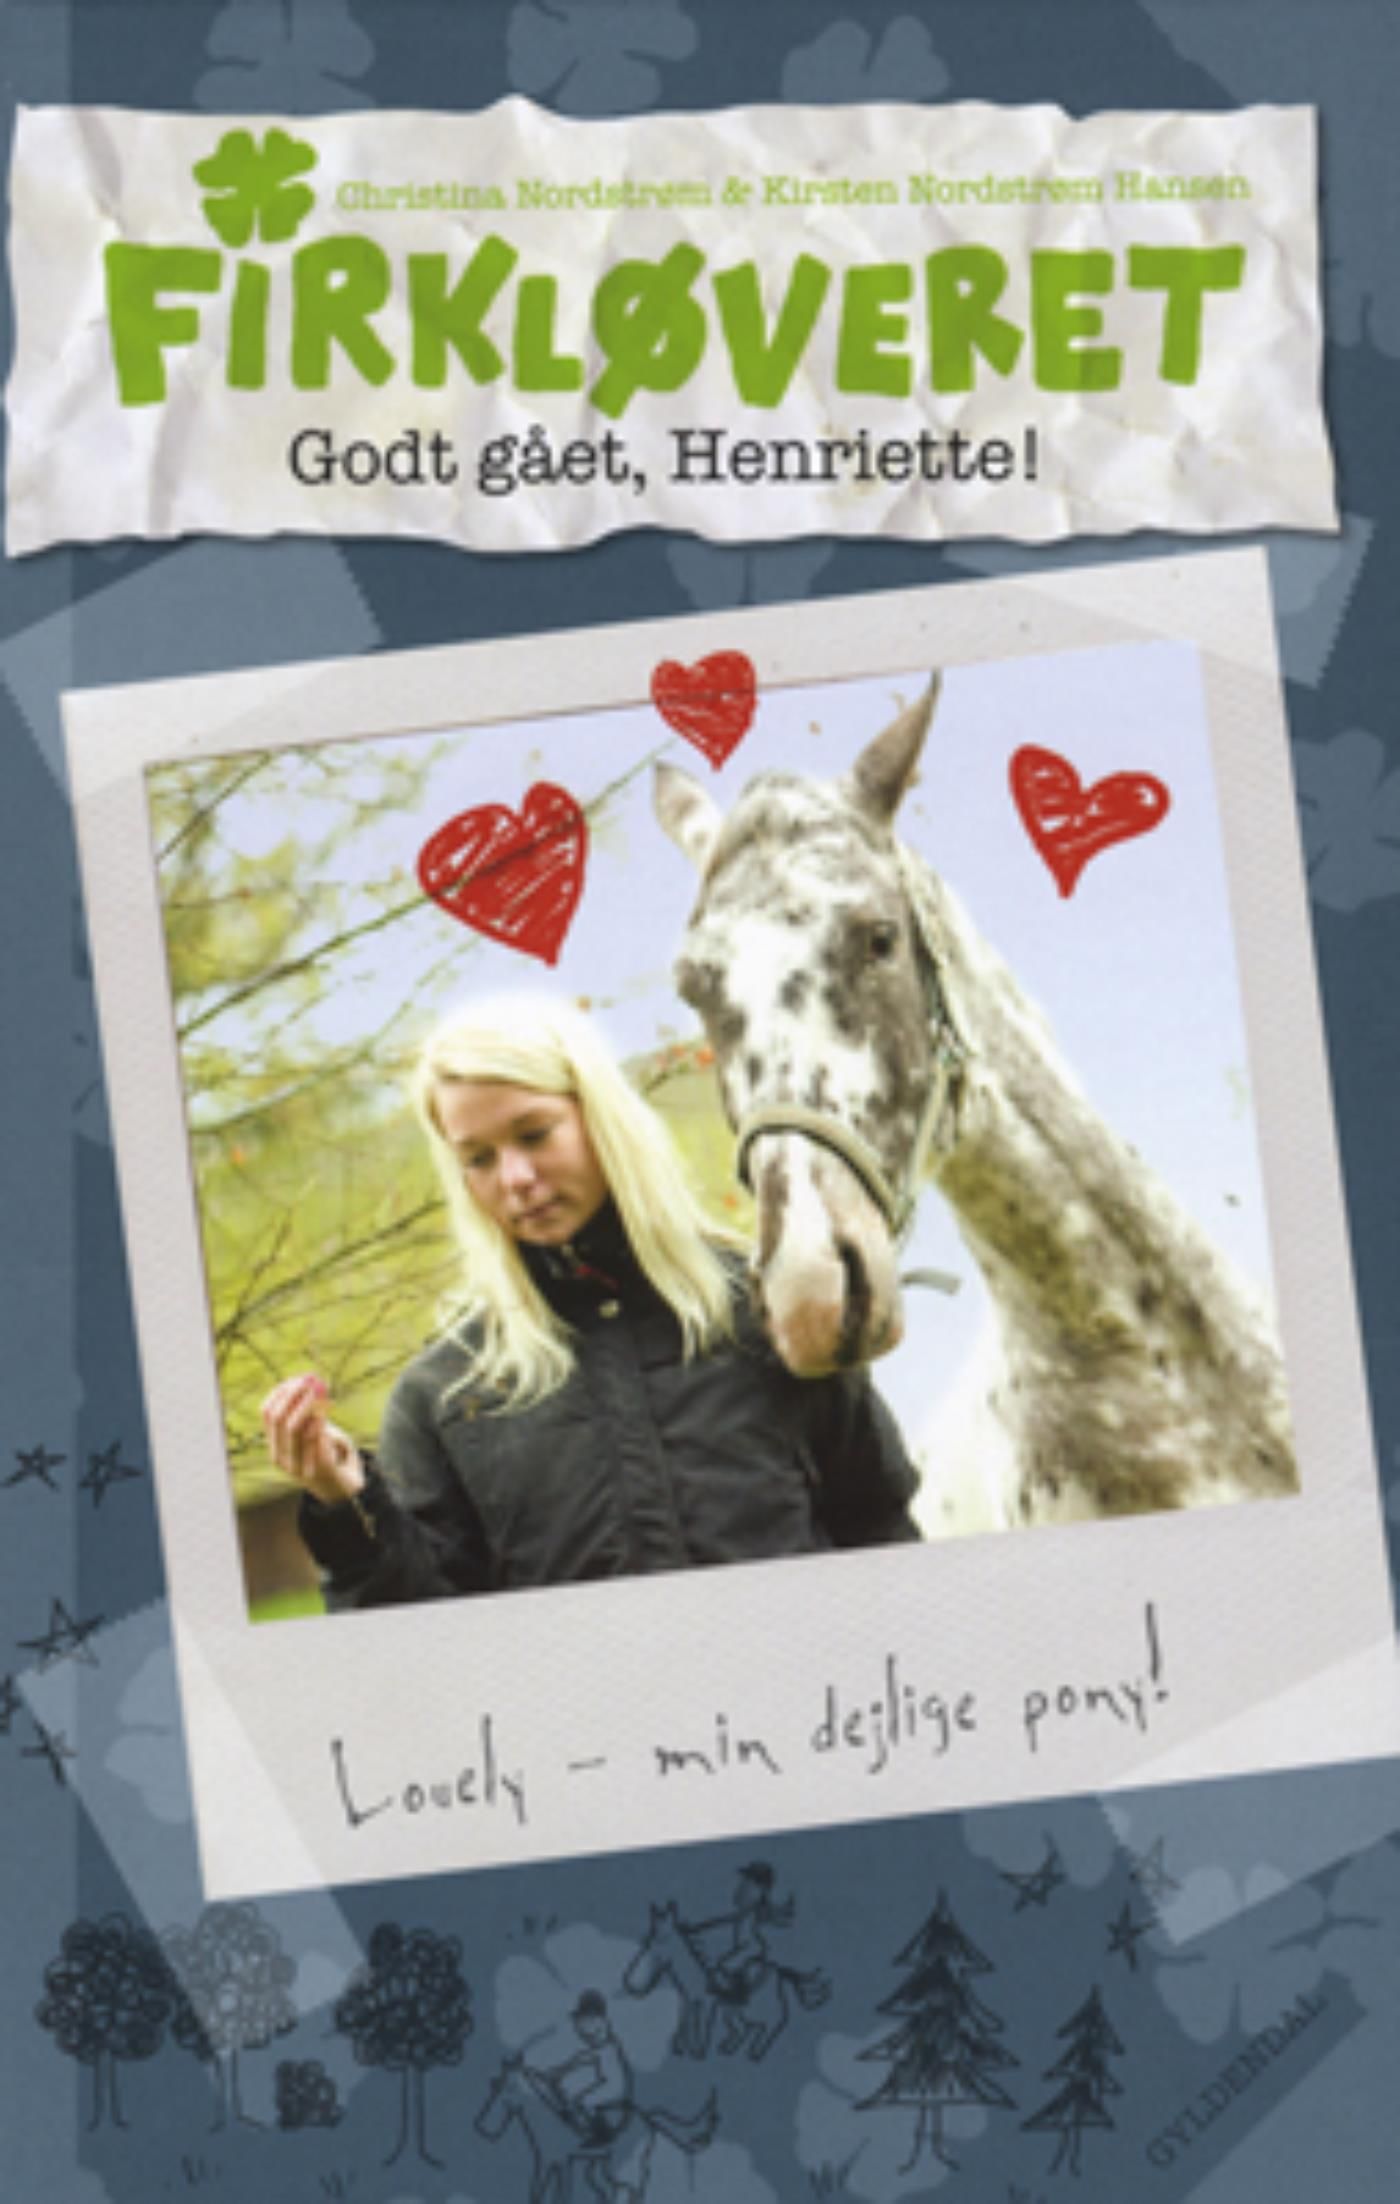 Firkløveret 3 - Godt gået, Henriette!, eBook by Kirsten Nordstrøm Hansen, Christina Nordstrøm